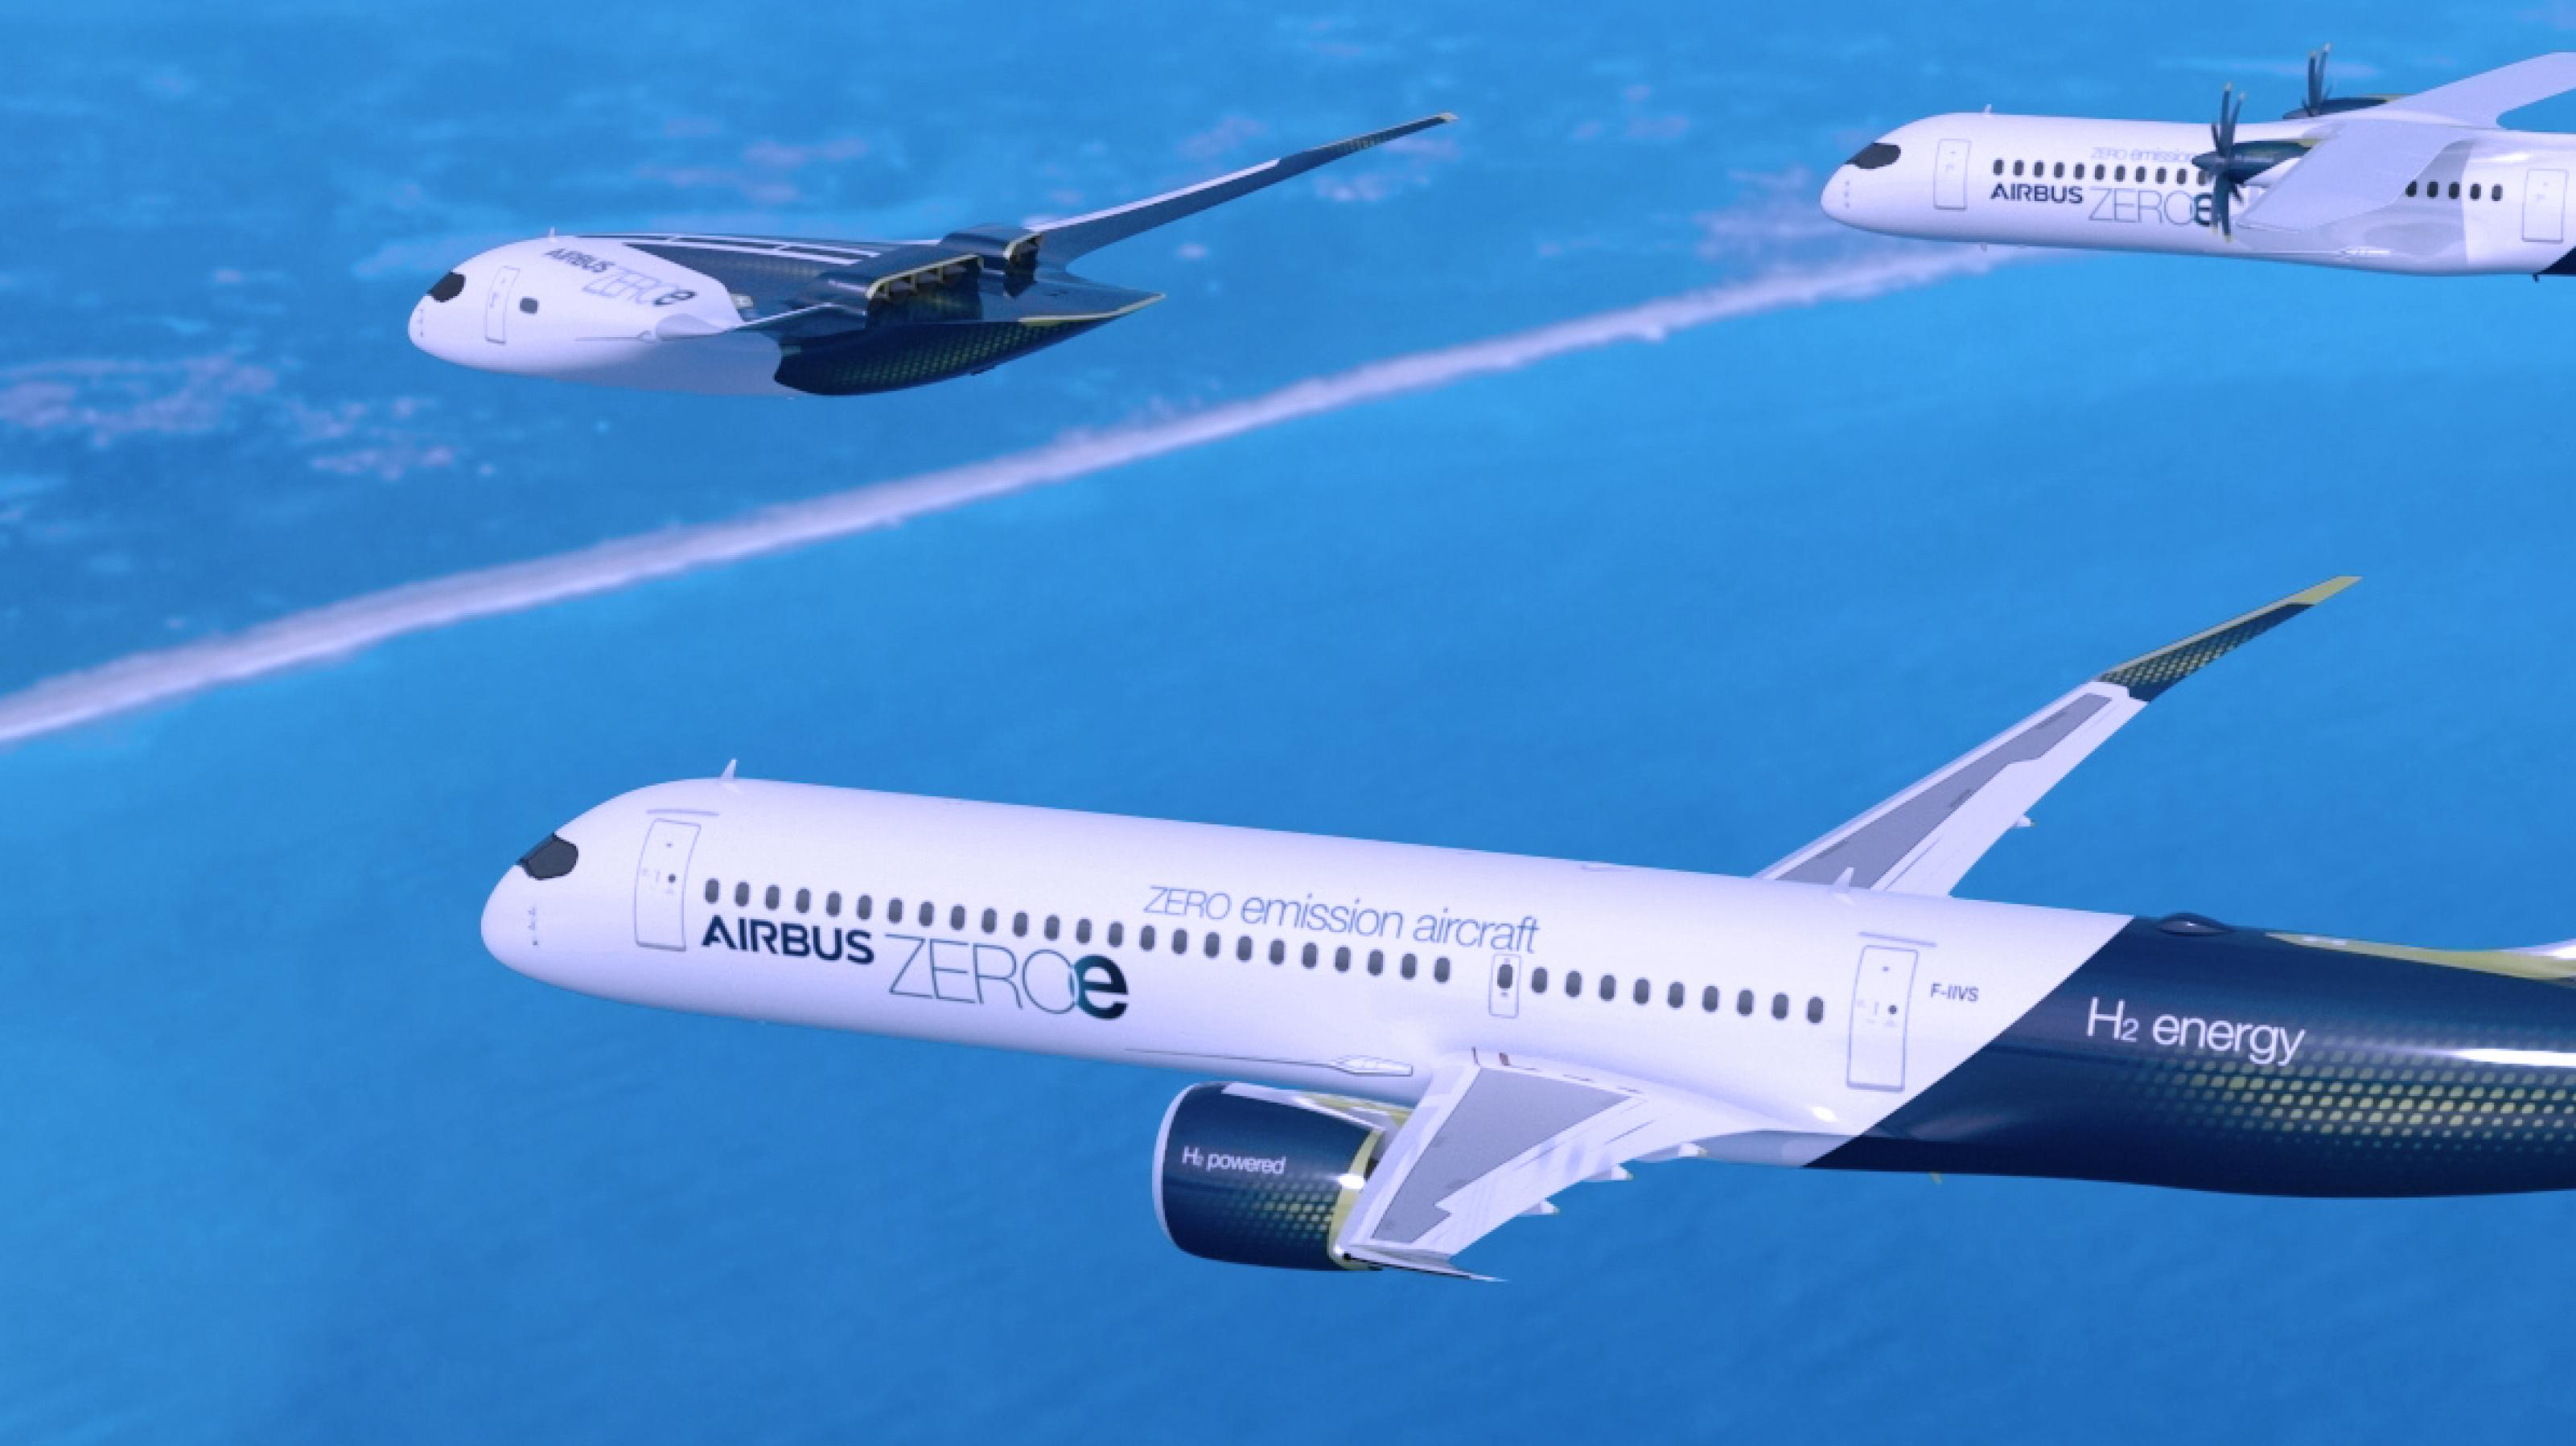 Künstlerische Darstellung einer Airbus ZEROe Flotte. Es sind die ersten emissionsfreien Passagierflugzeuge von Airbus, die das Fliegen ab 2035 klimaneutral machen sollen.